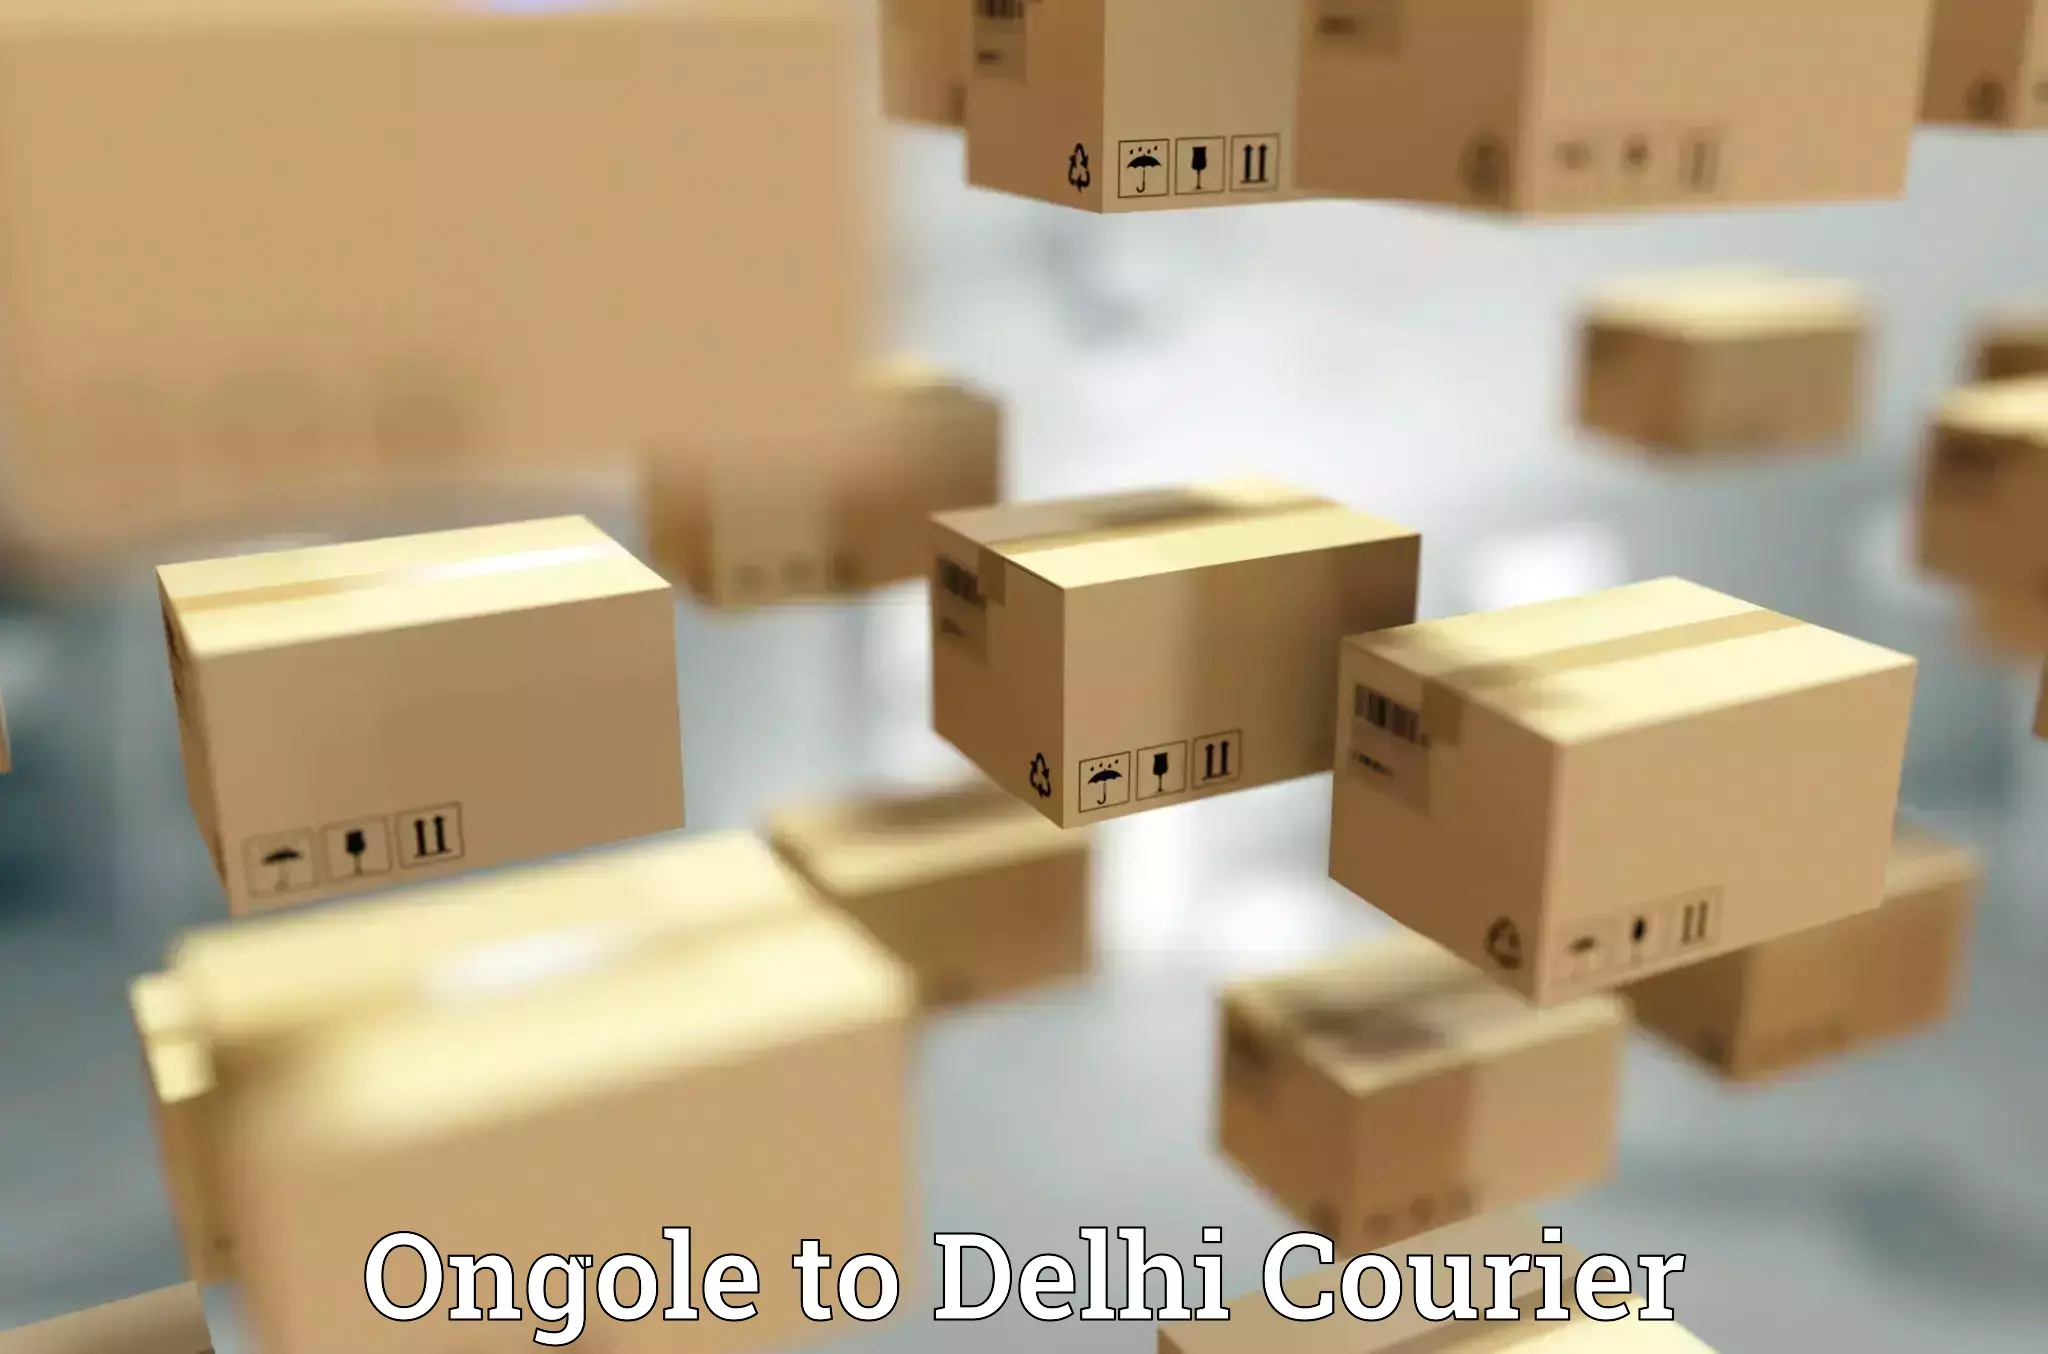 High-capacity parcel service Ongole to Kalkaji